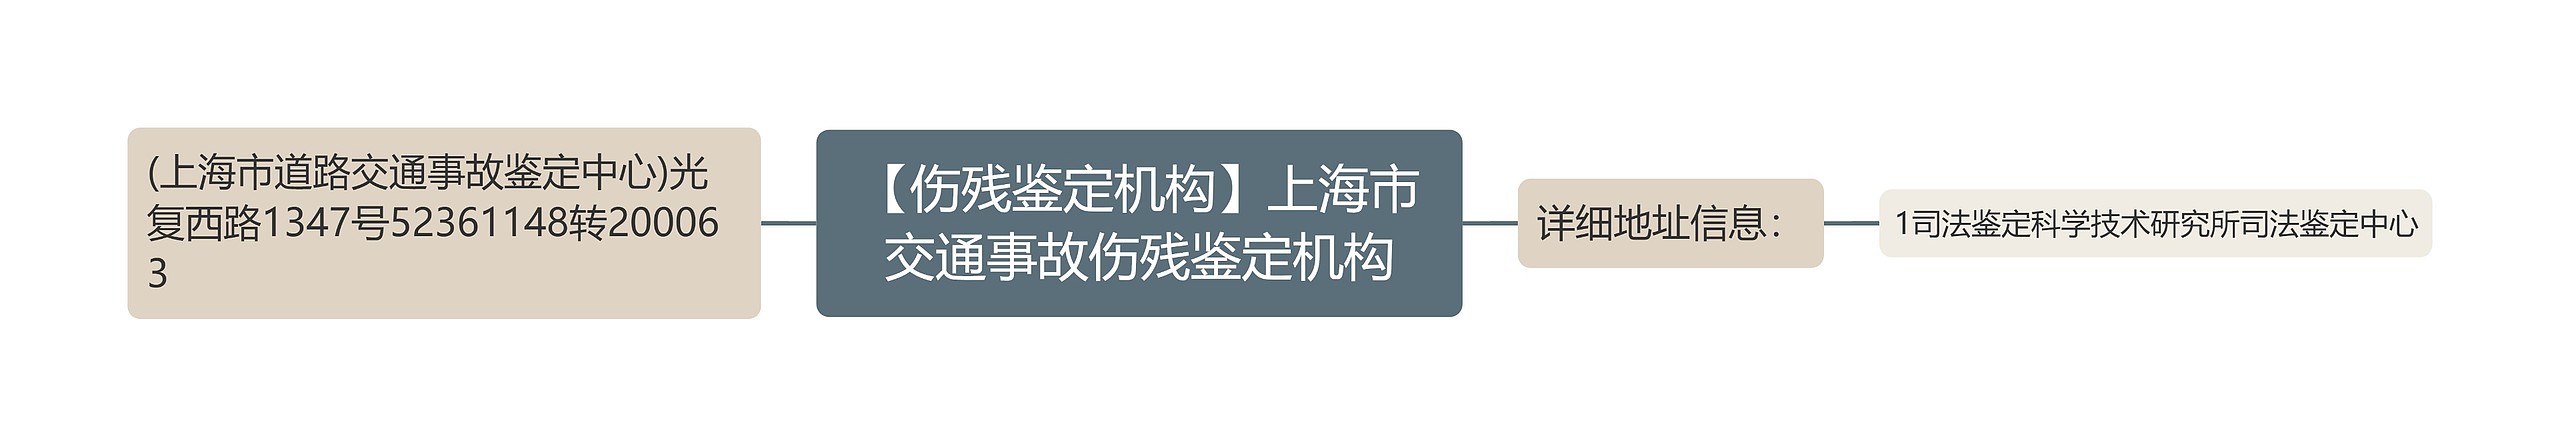 【伤残鉴定机构】上海市交通事故伤残鉴定机构